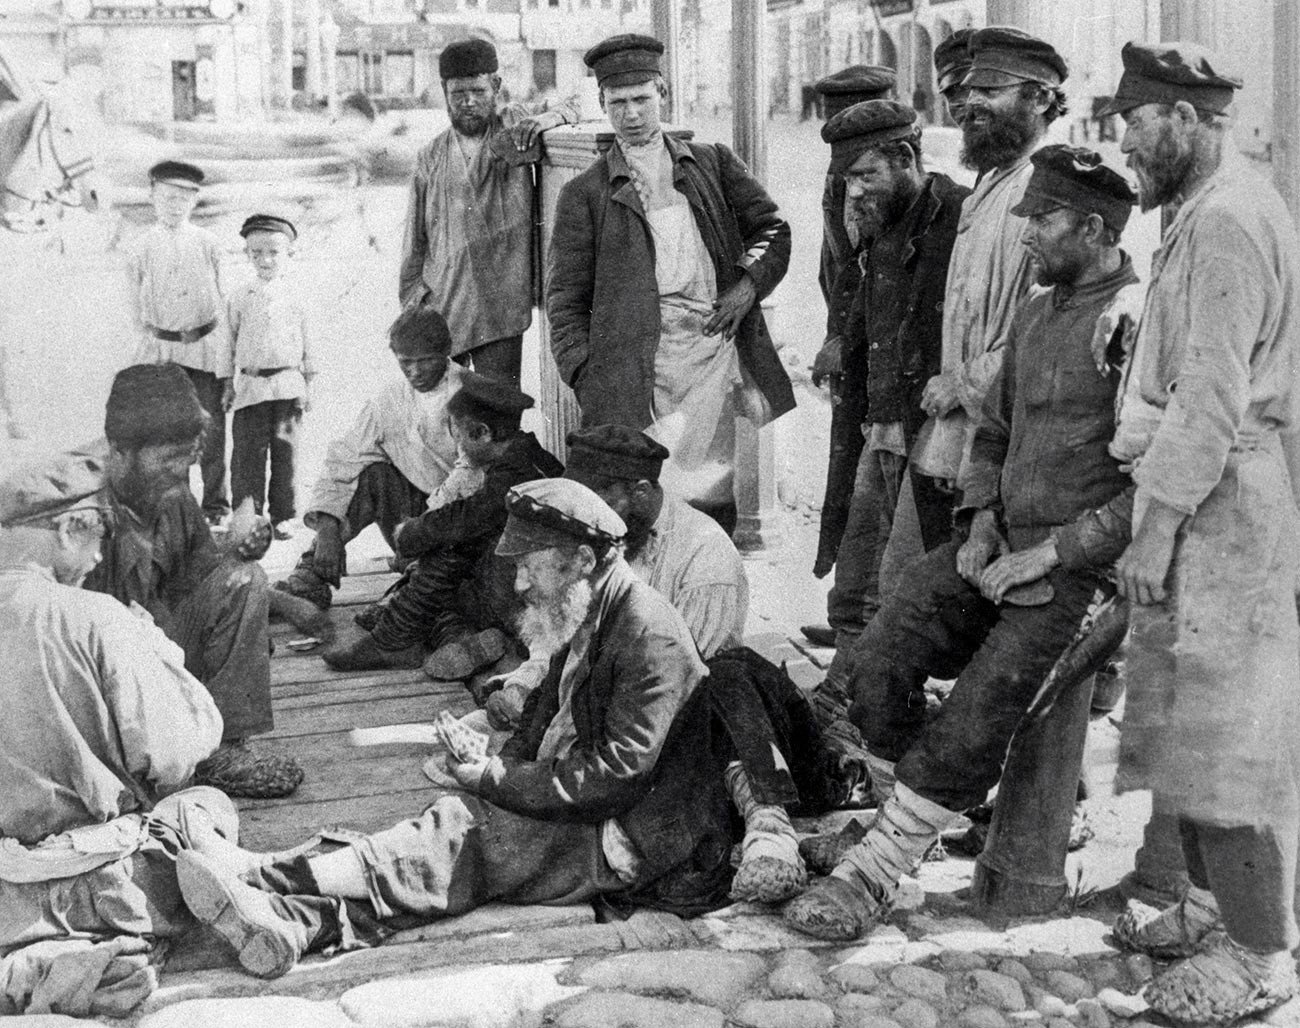 Des vagabonds jouant aux cartes dans la rue, fin du XIXe siècle